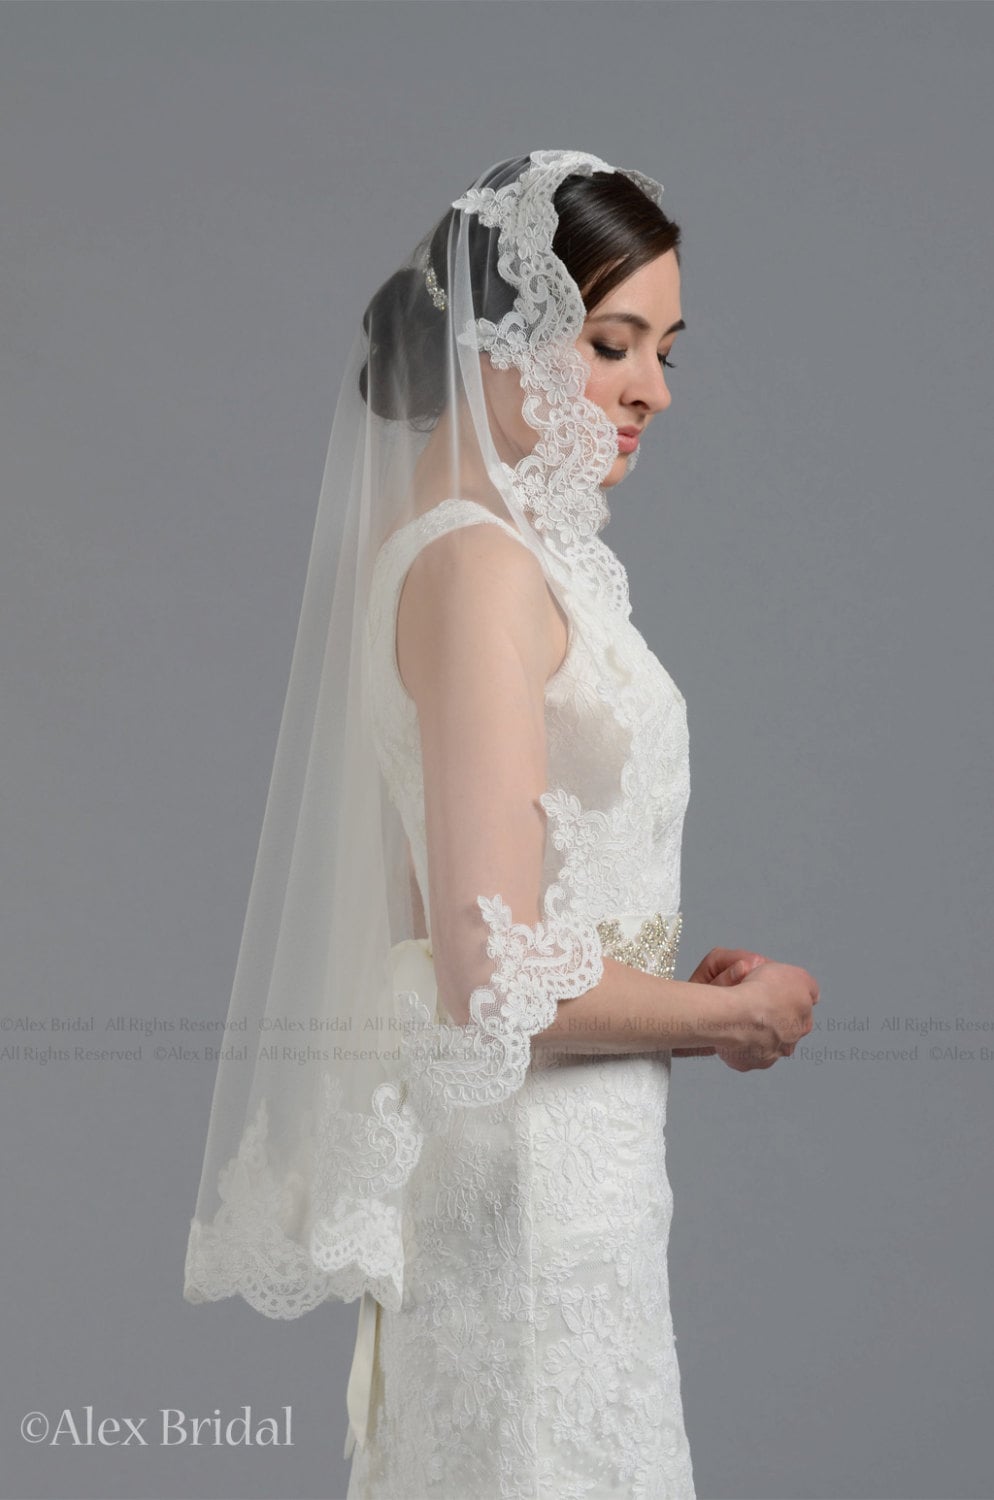 Ivory wedding veil, bridal veil, mantilla veil, elbow length veil, alencon lace veil, wedding veil ivory